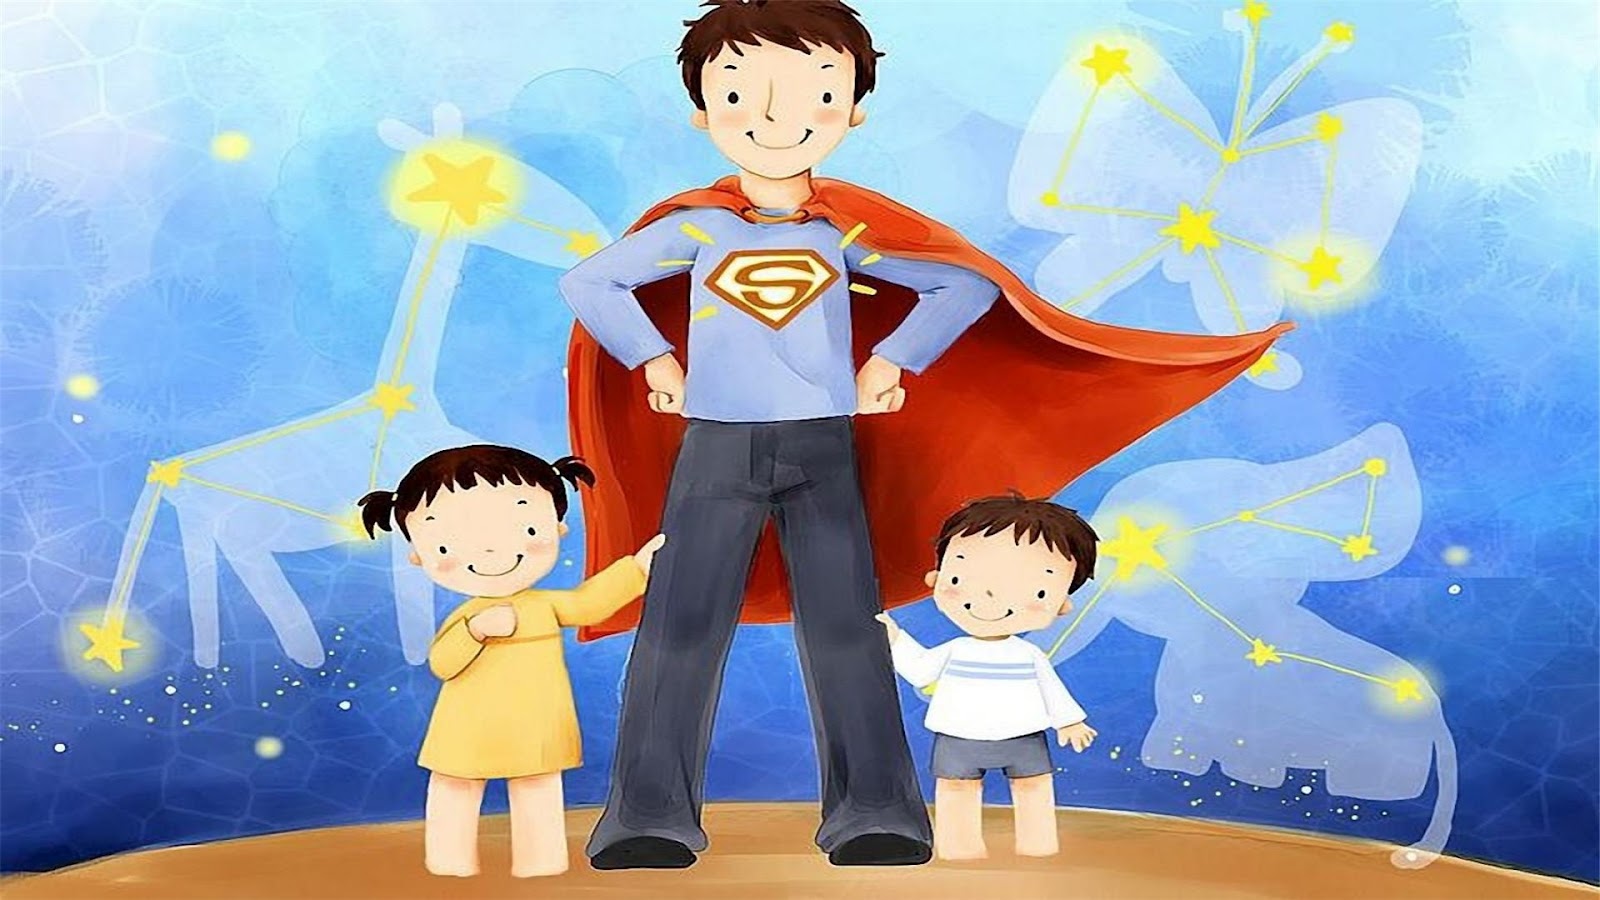 http://2.bp.blogspot.com/-ANvt0OlXIe4/T8Hn3L0gQWI/AAAAAAAADwA/llICmkZqNYs/s1600/Fathers-Day-Cartoon-Wallpaper-for-Kids.jpg